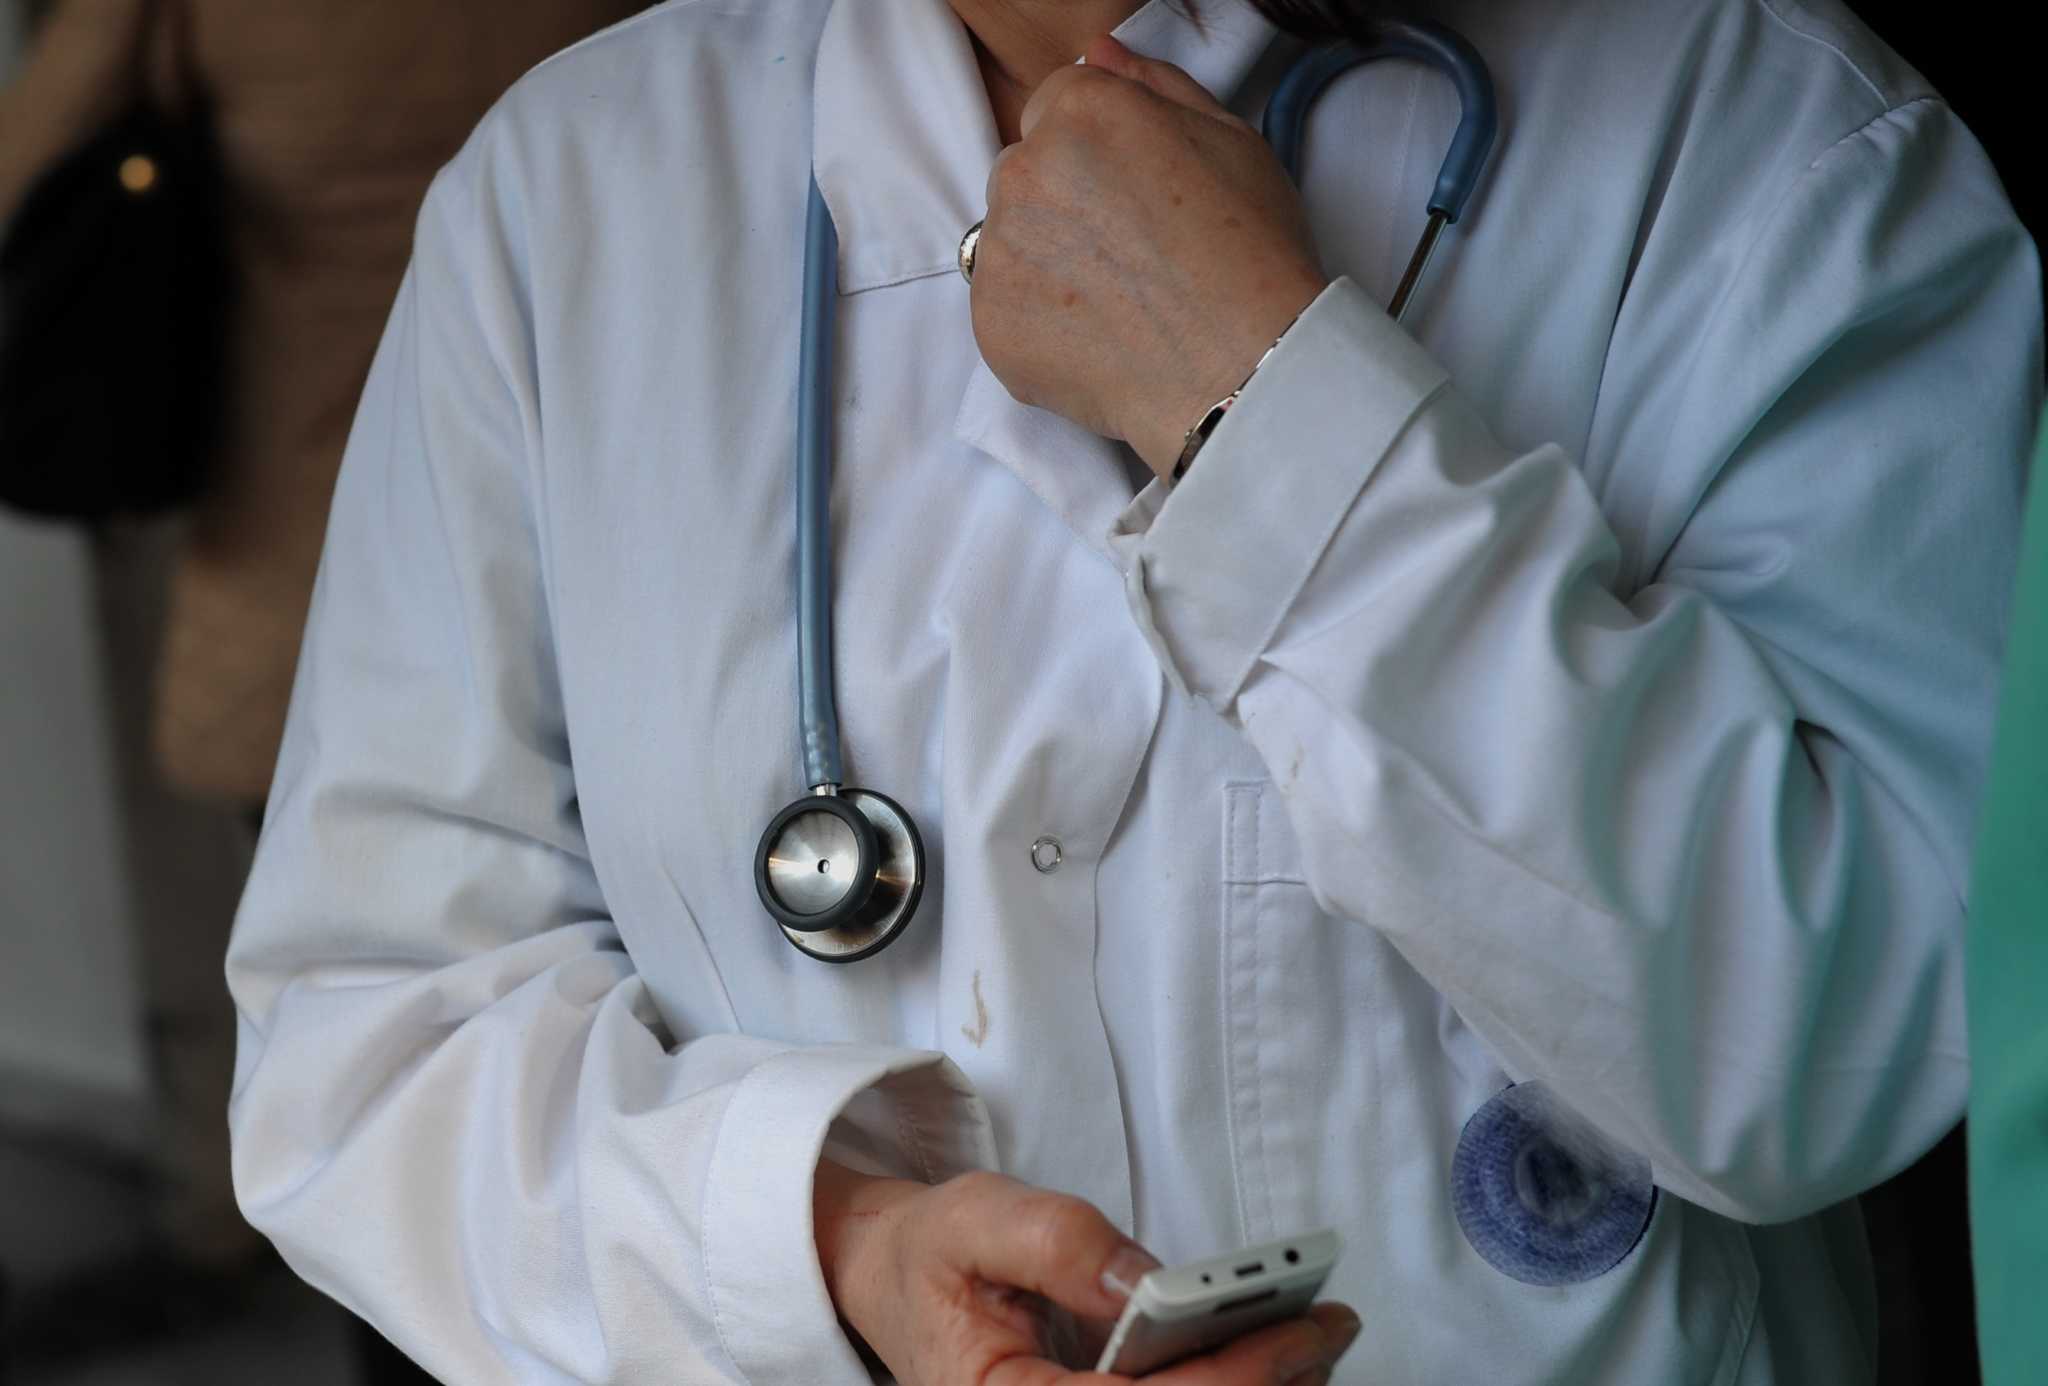 Κορονοϊός: Επταπλάσιος ο κίνδυνος για σοβαρή νόσηση σε γιατρούς και νοσηλευτές